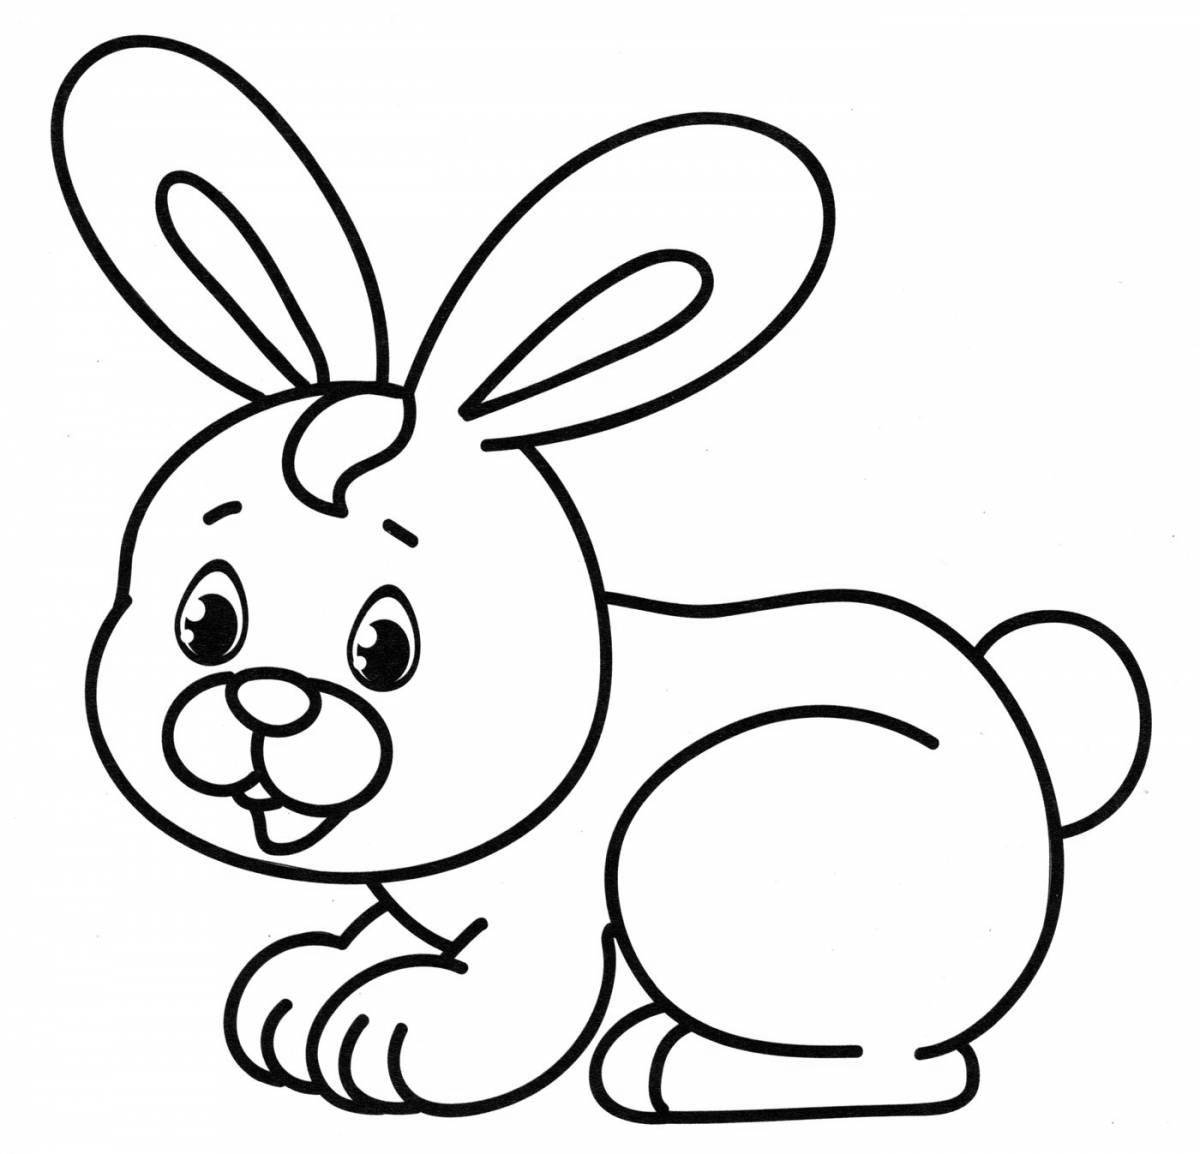 Радиант раскраска кролик